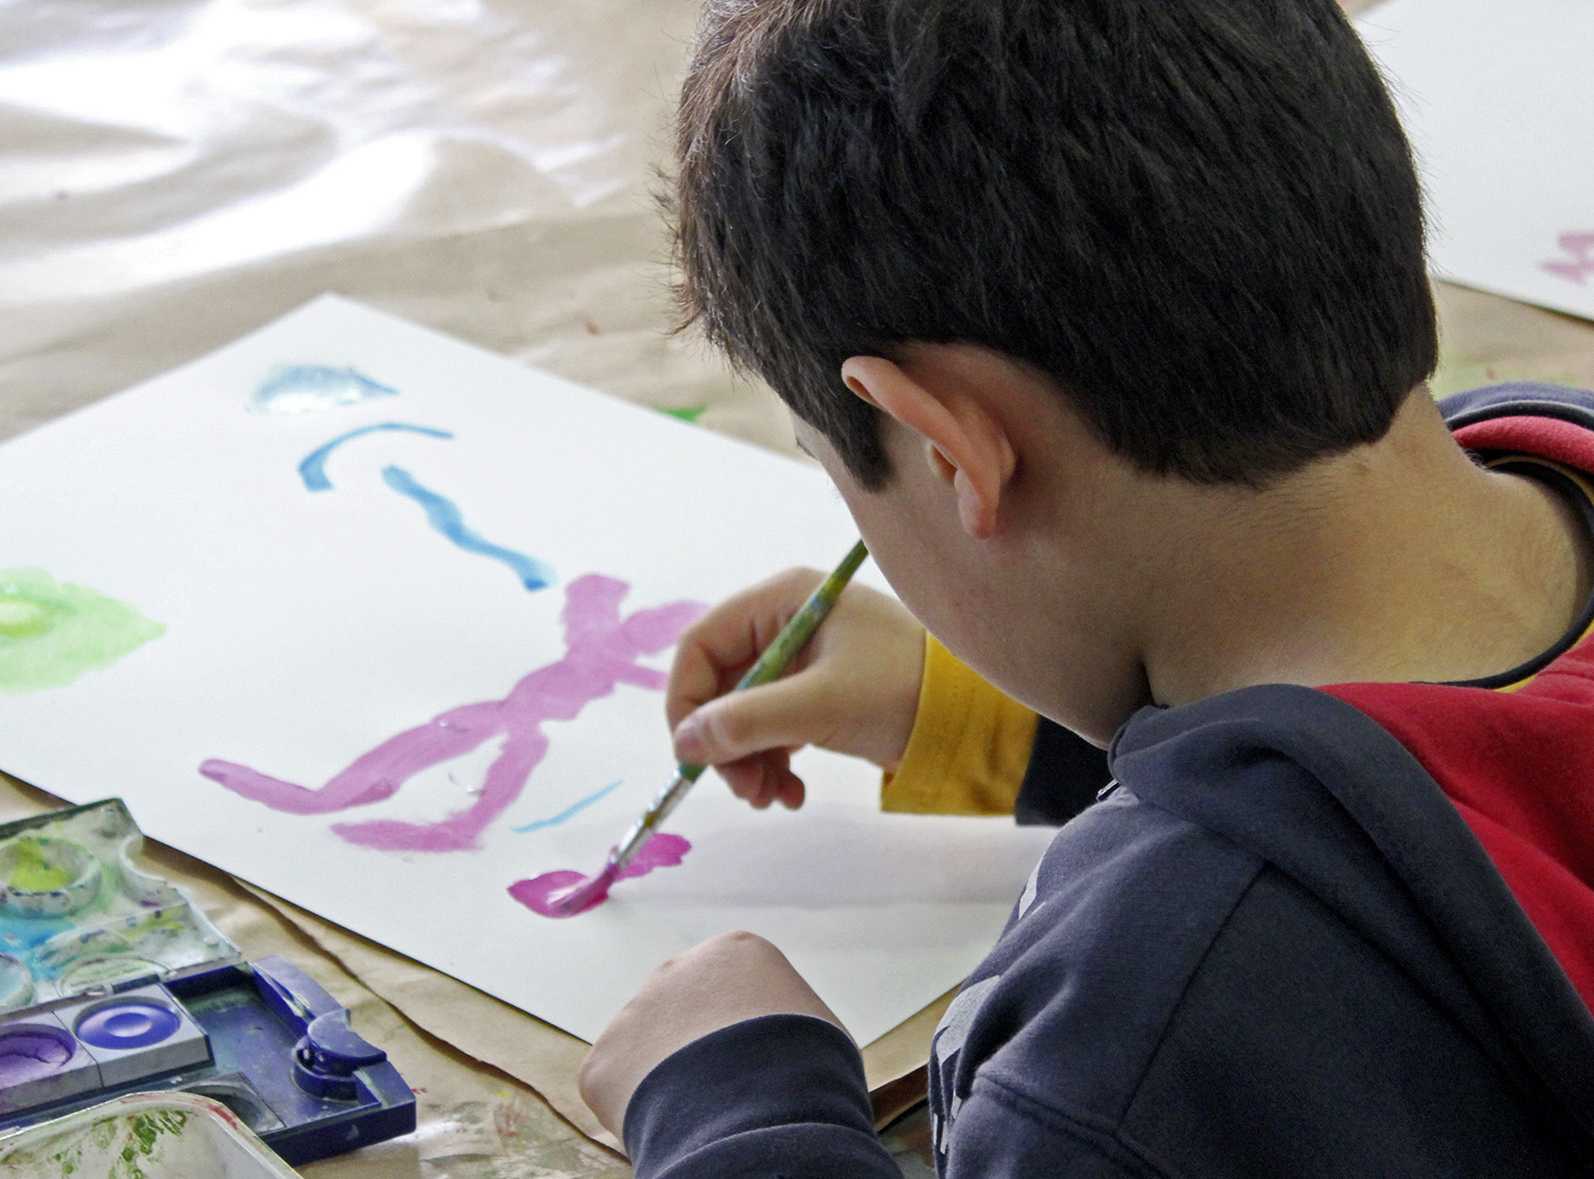 Die Abbildung zeigt einen Jungen von hintern, der gerade mit Wasserfarben auf einem Blatt Papier malt. Die Fotoaufnahme stammt von Thomas Ruppenstein.